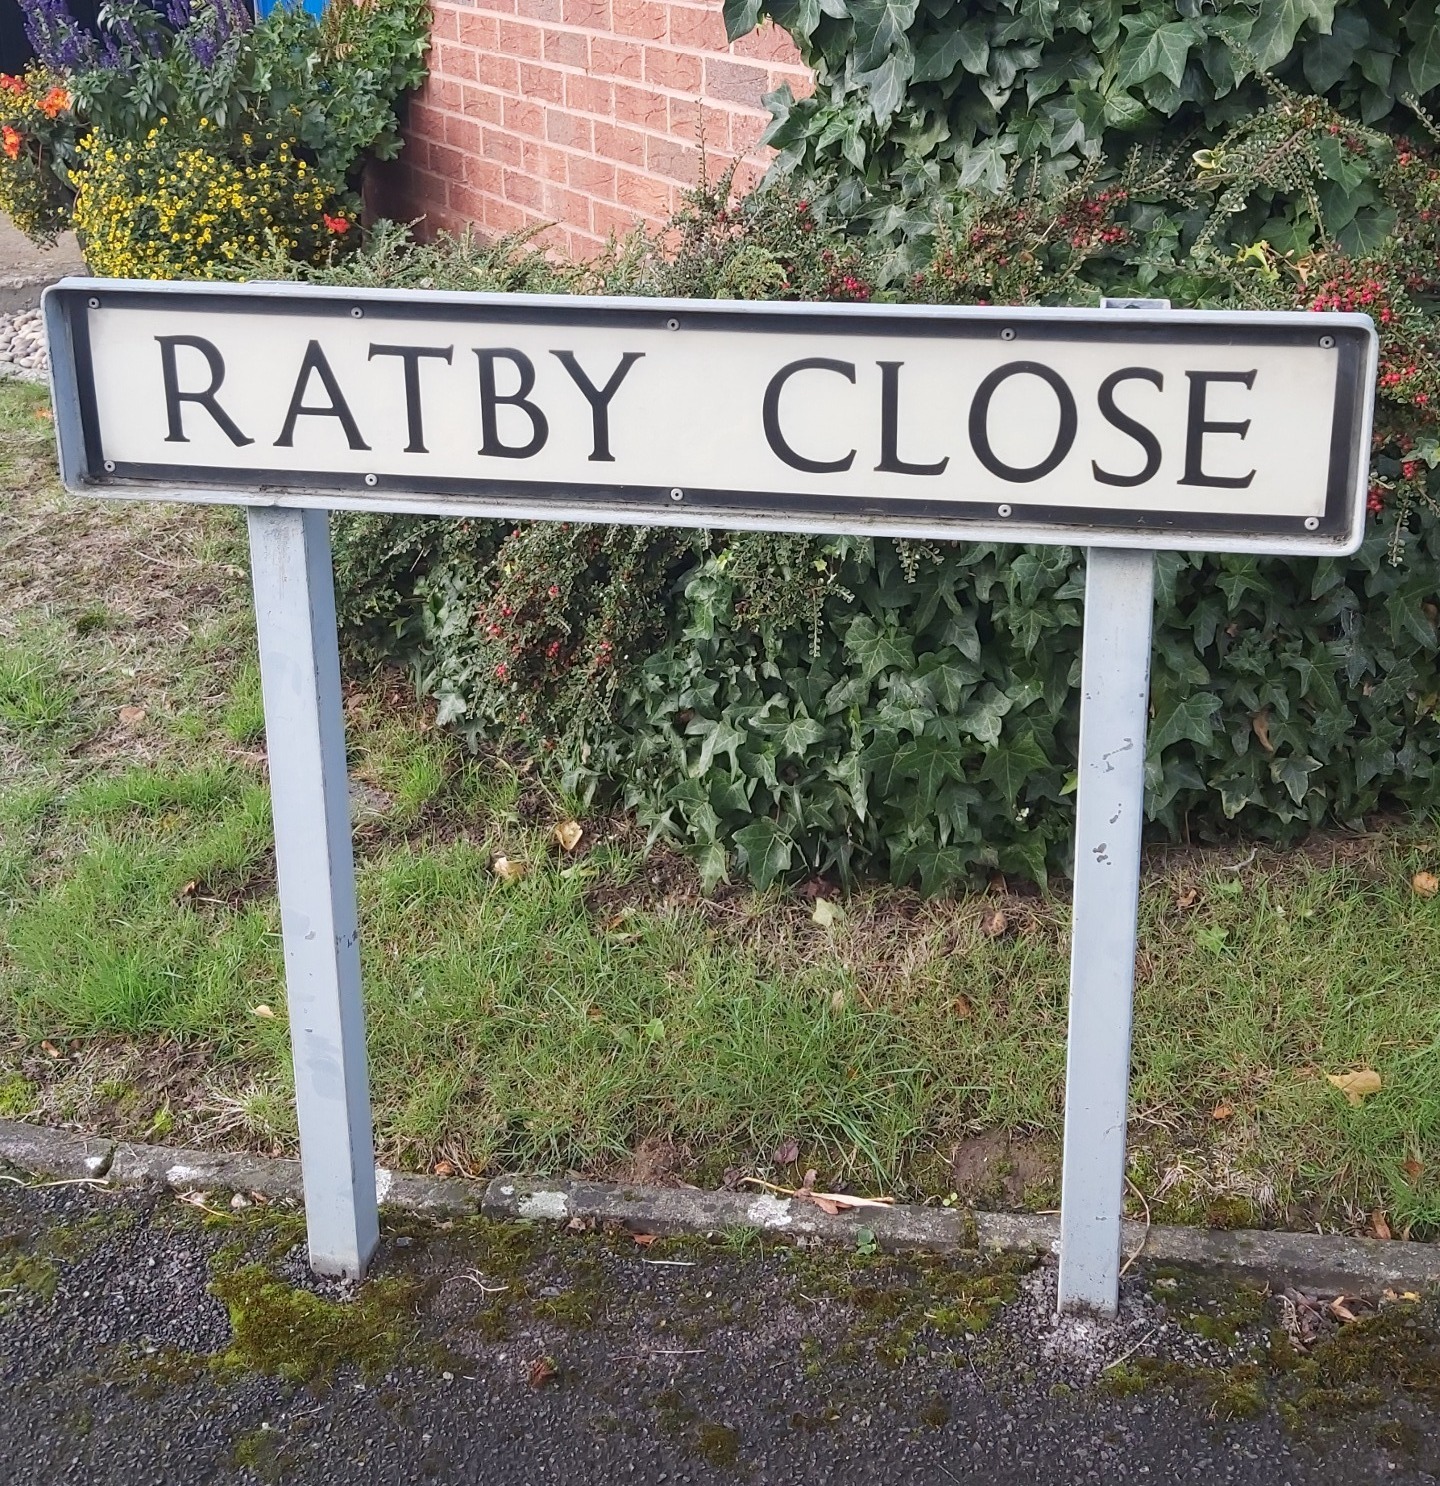 Ratby Close sign